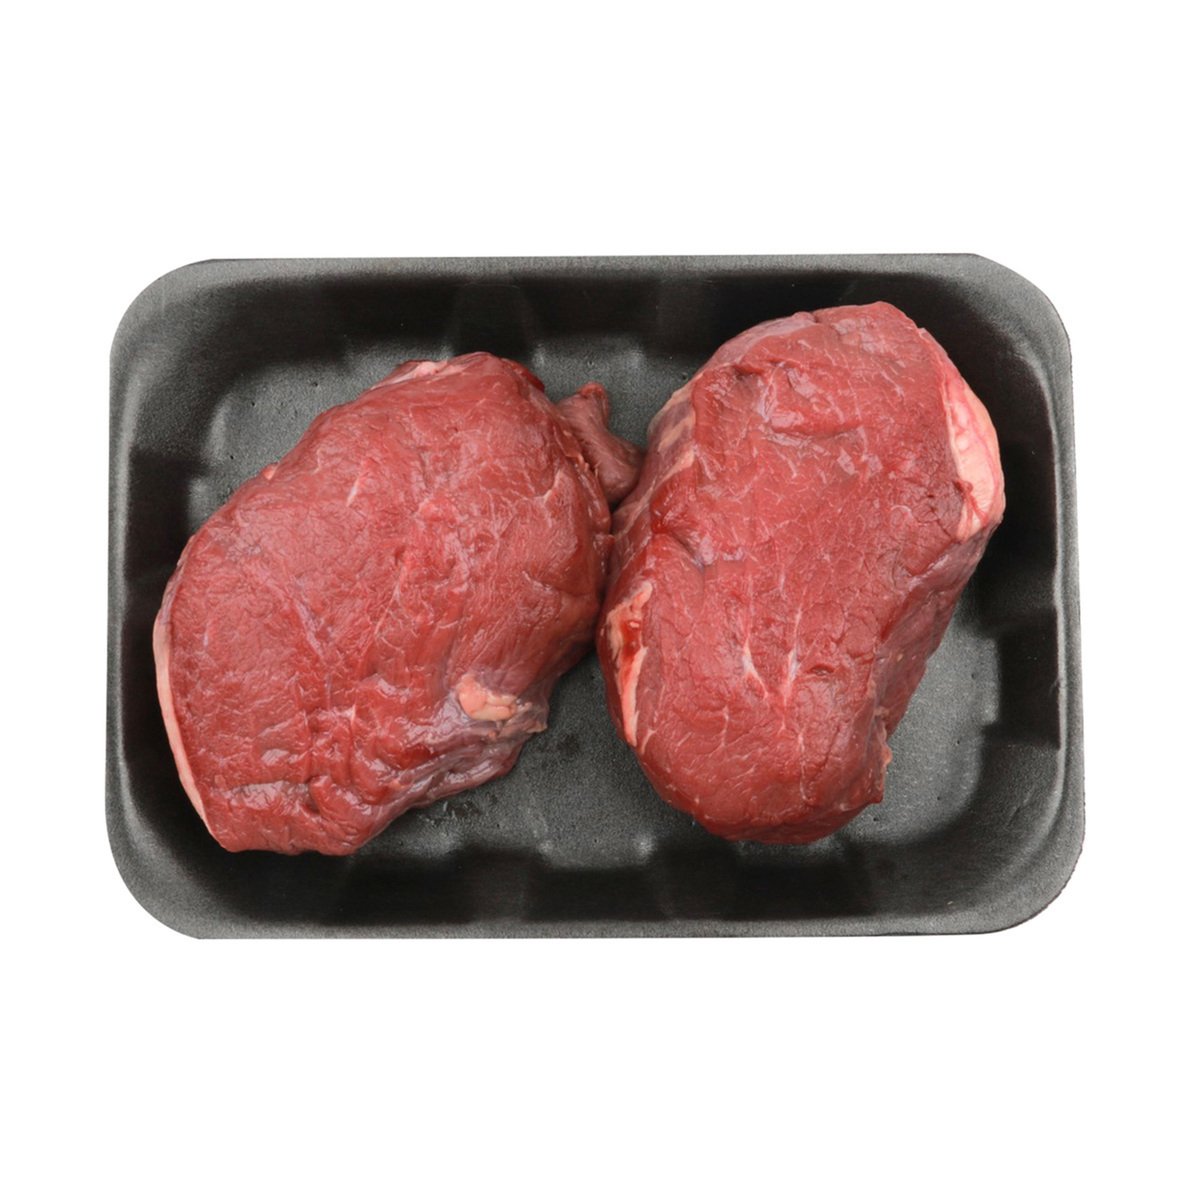 اشتري قم بشراء فلتو جاموسي هندي 300 جم Online at Best Price من الموقع - من لولو هايبر ماركت Veal & Beef في الكويت